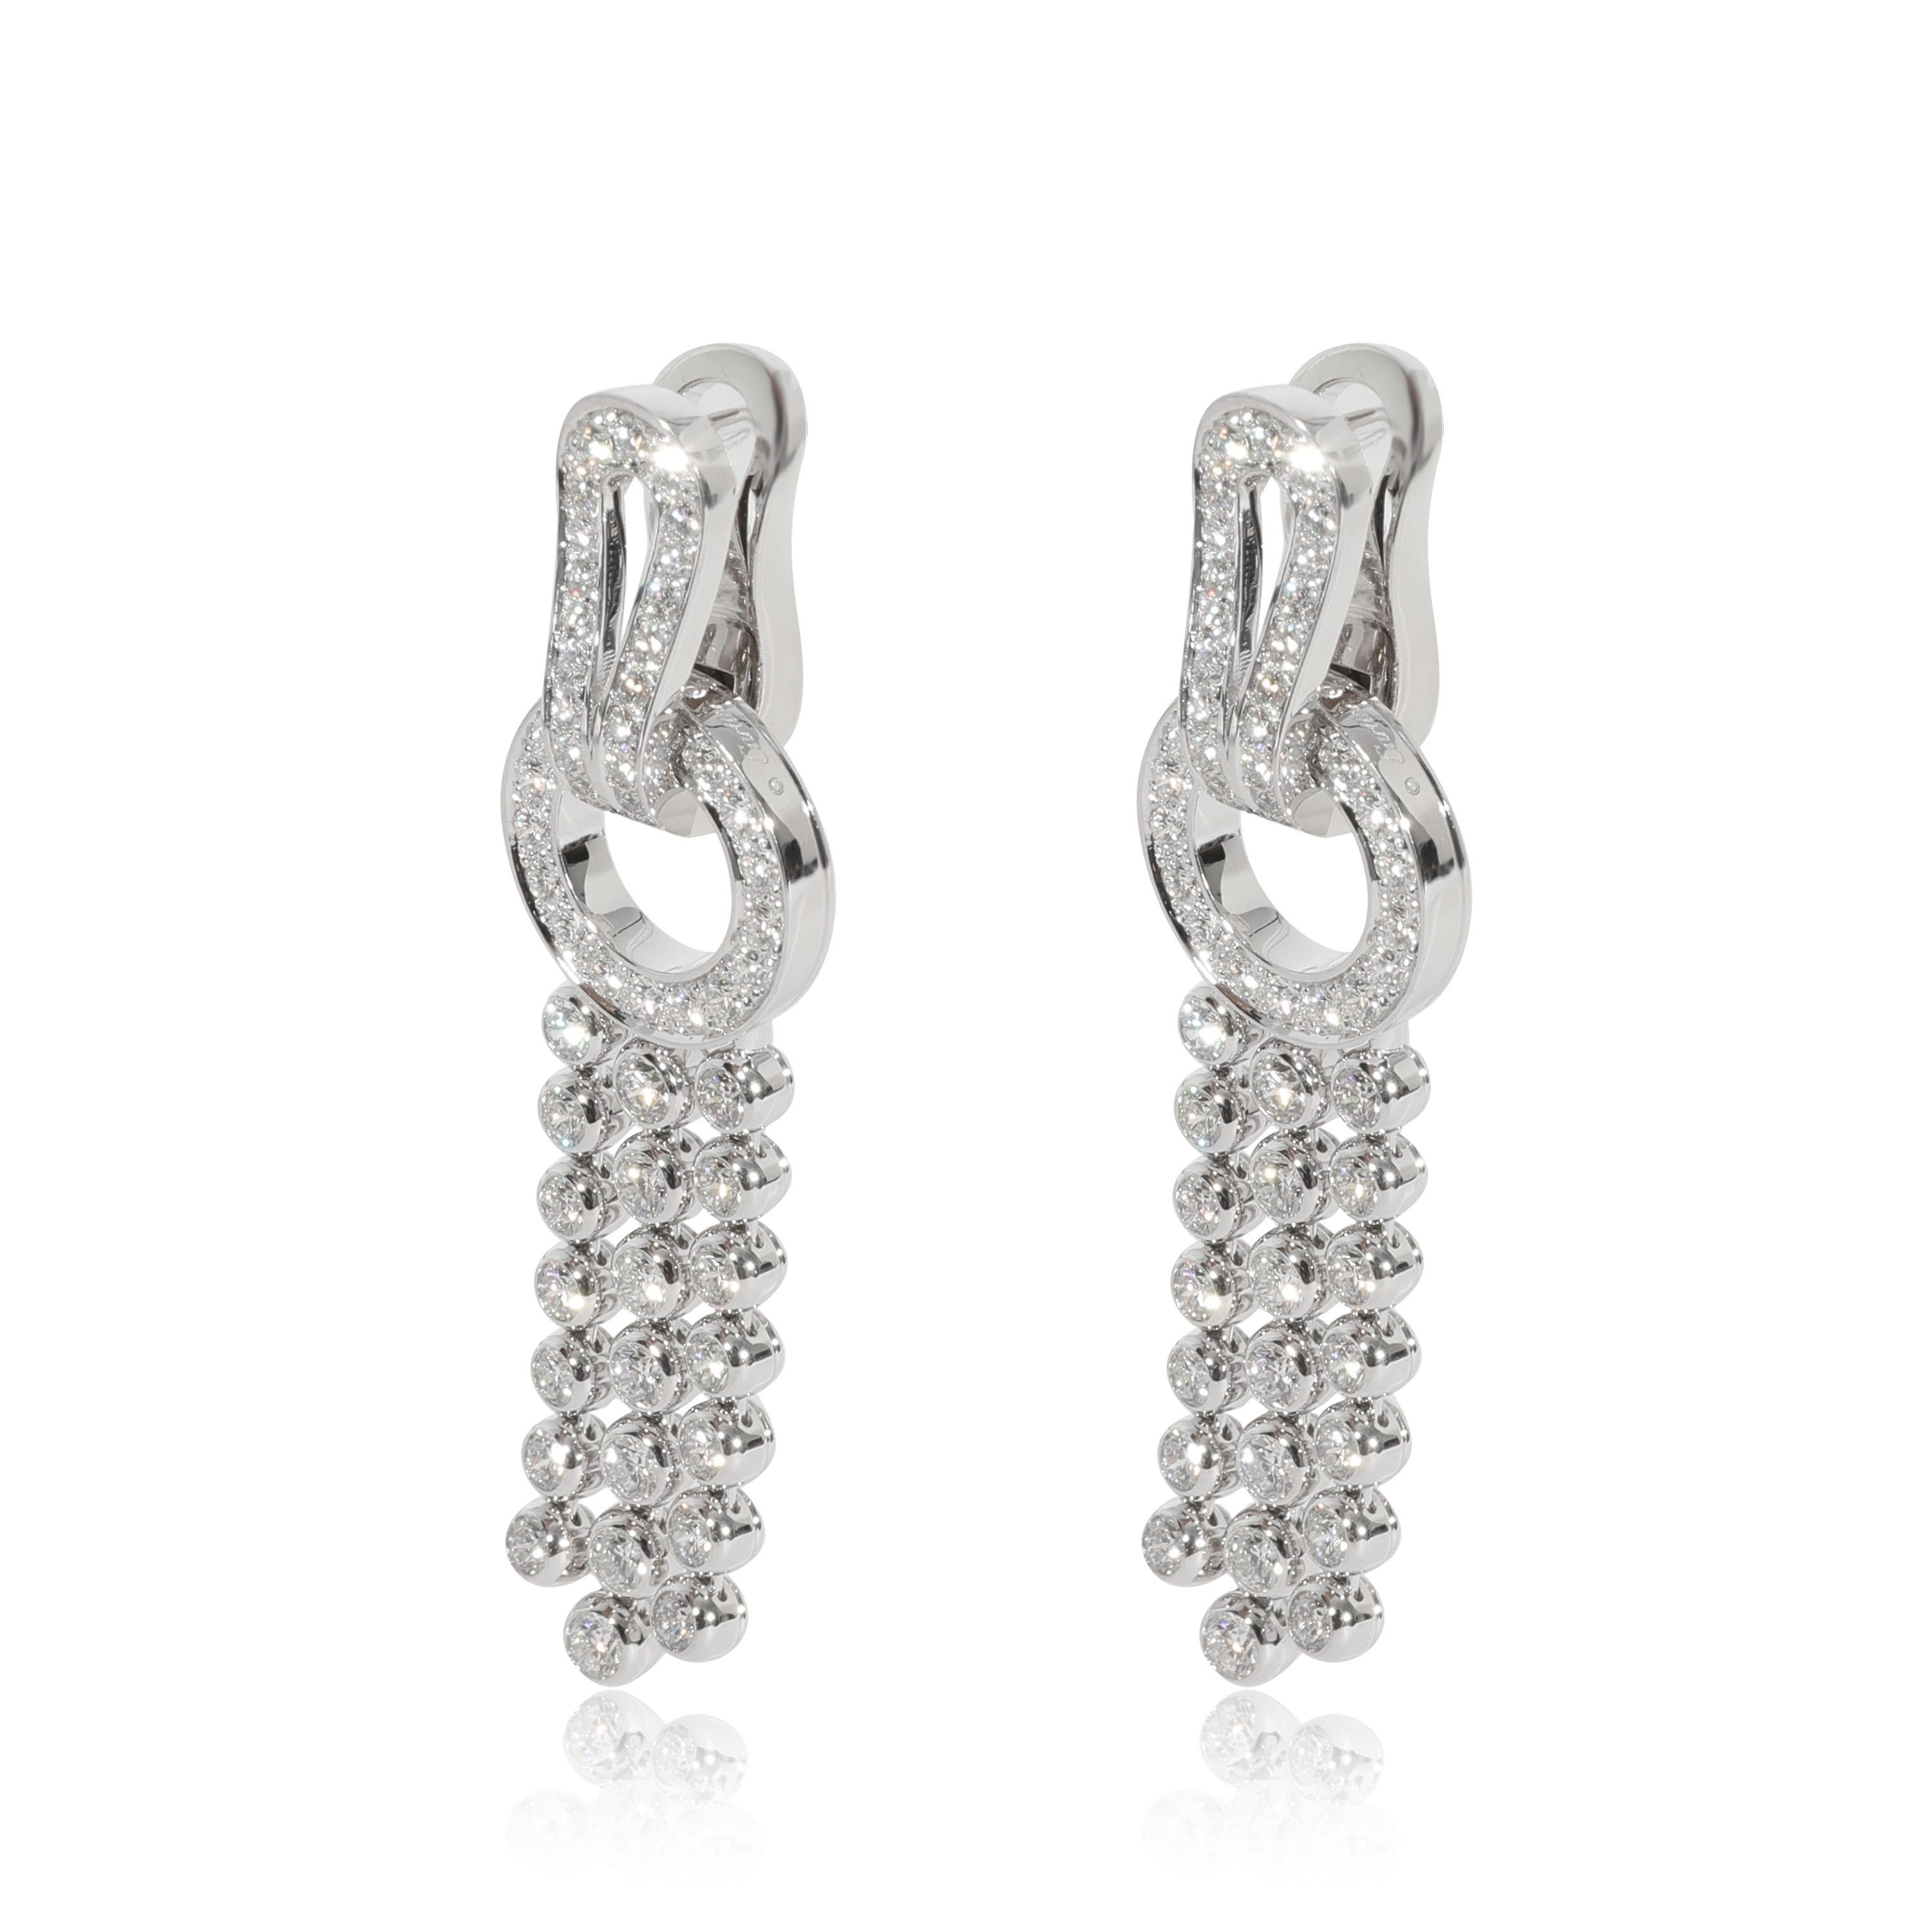 agrafe earrings